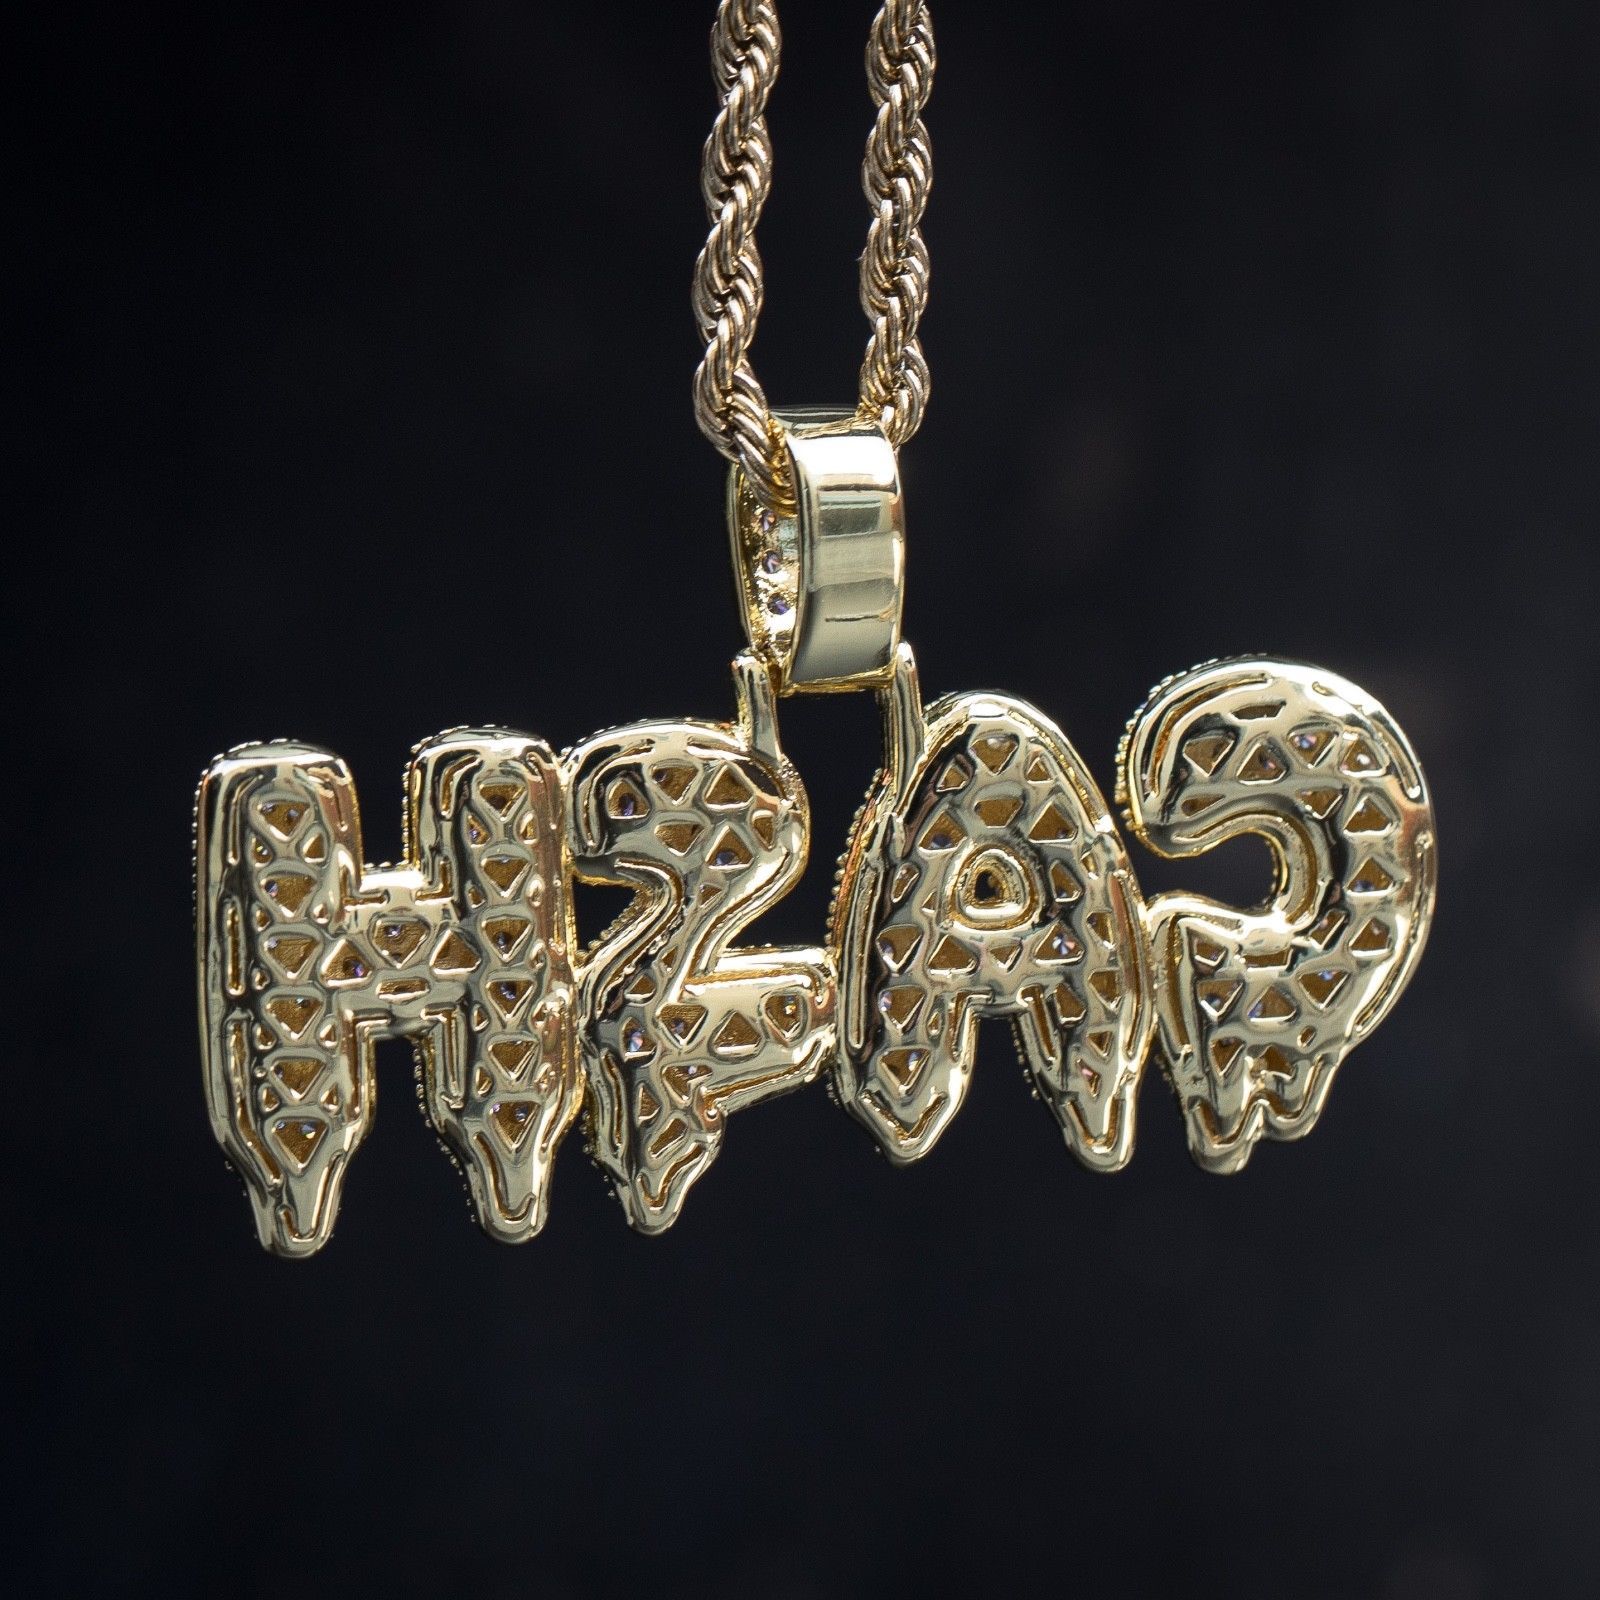 Gold Lab Diamond Cash Money Pendant Necklace - Chains, Necklaces & Pendants